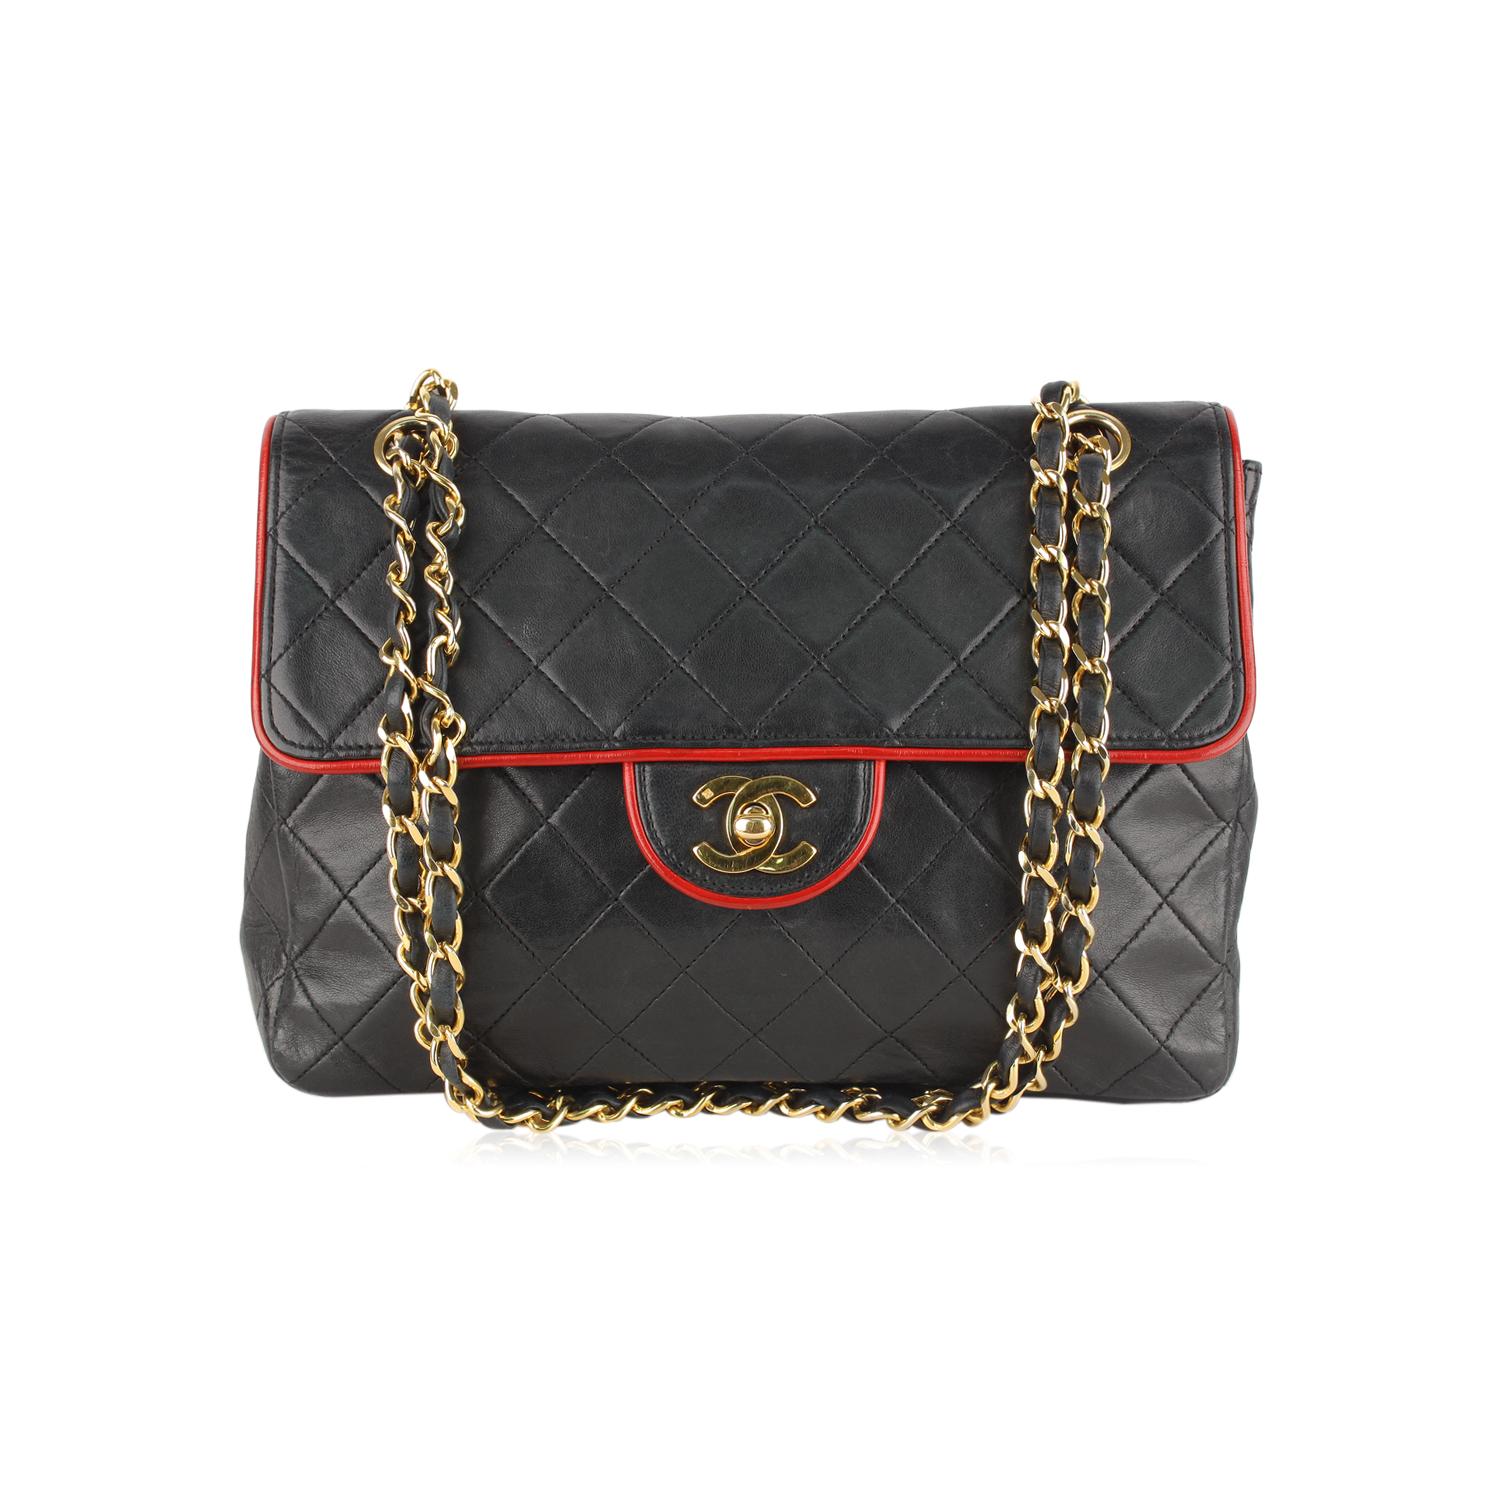 Chanel Vintage Black Quilted Leather Shoulder Bag with Contrast Trim 1